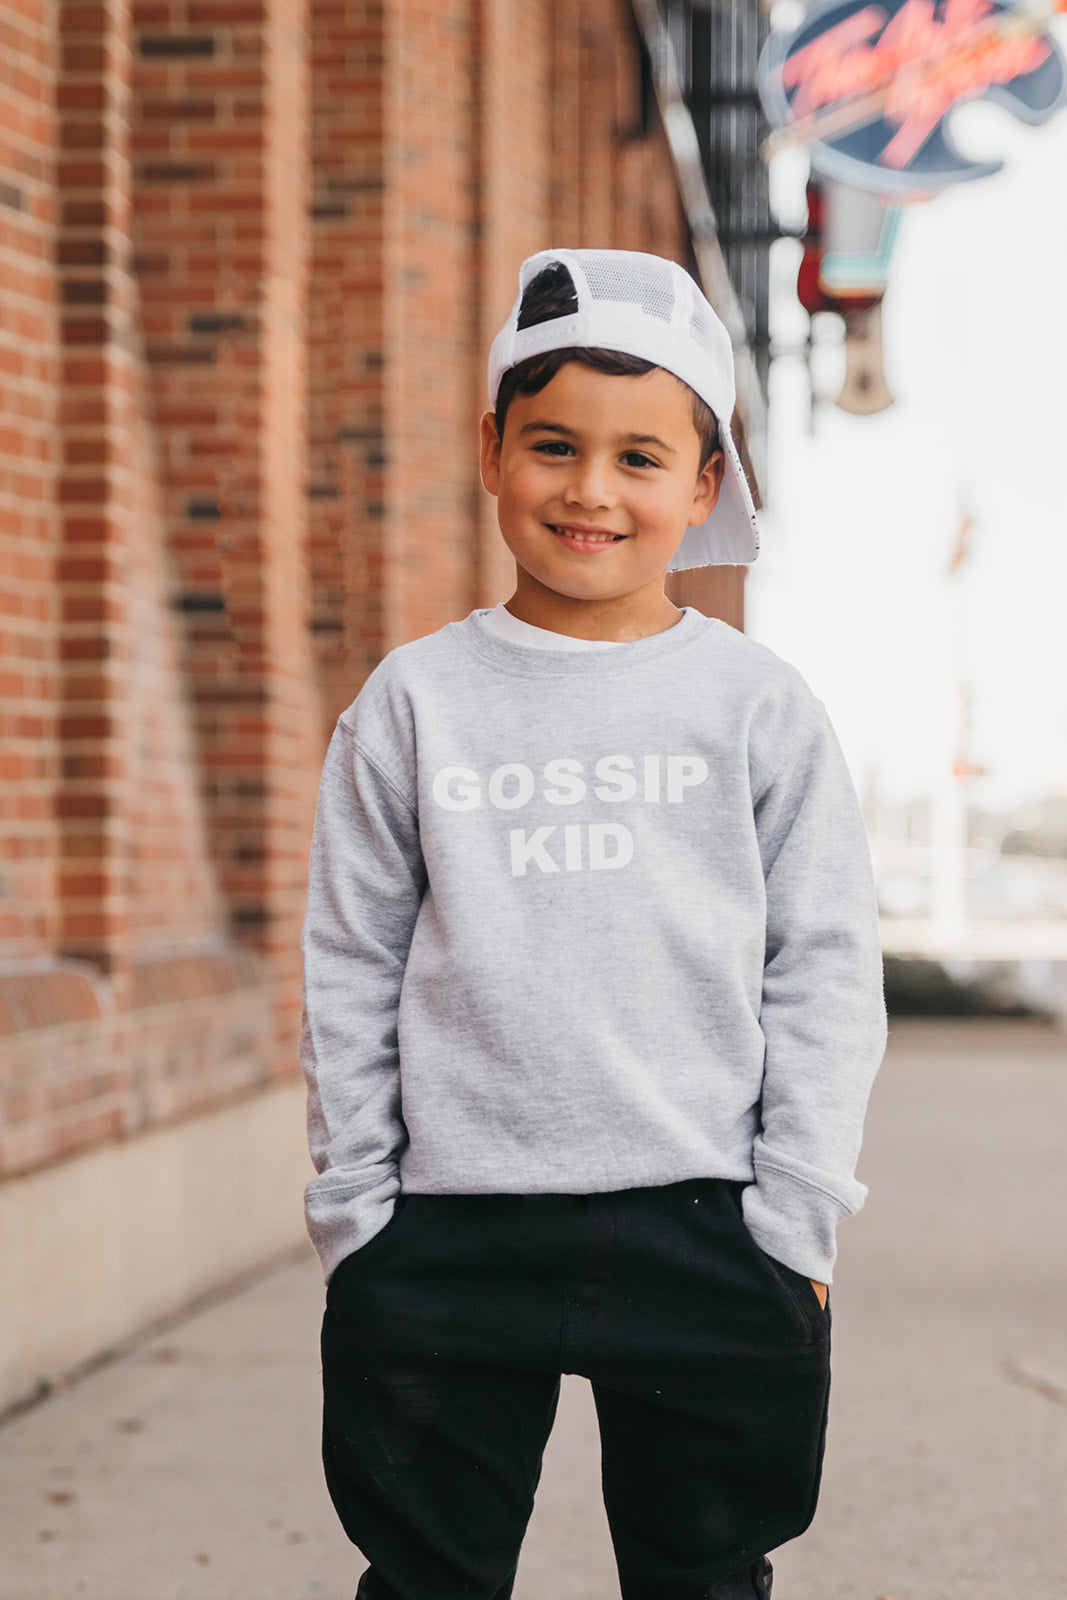 The "GOSSIP KID" Gossip Kids Unisex Crewneck Sweater | GREY